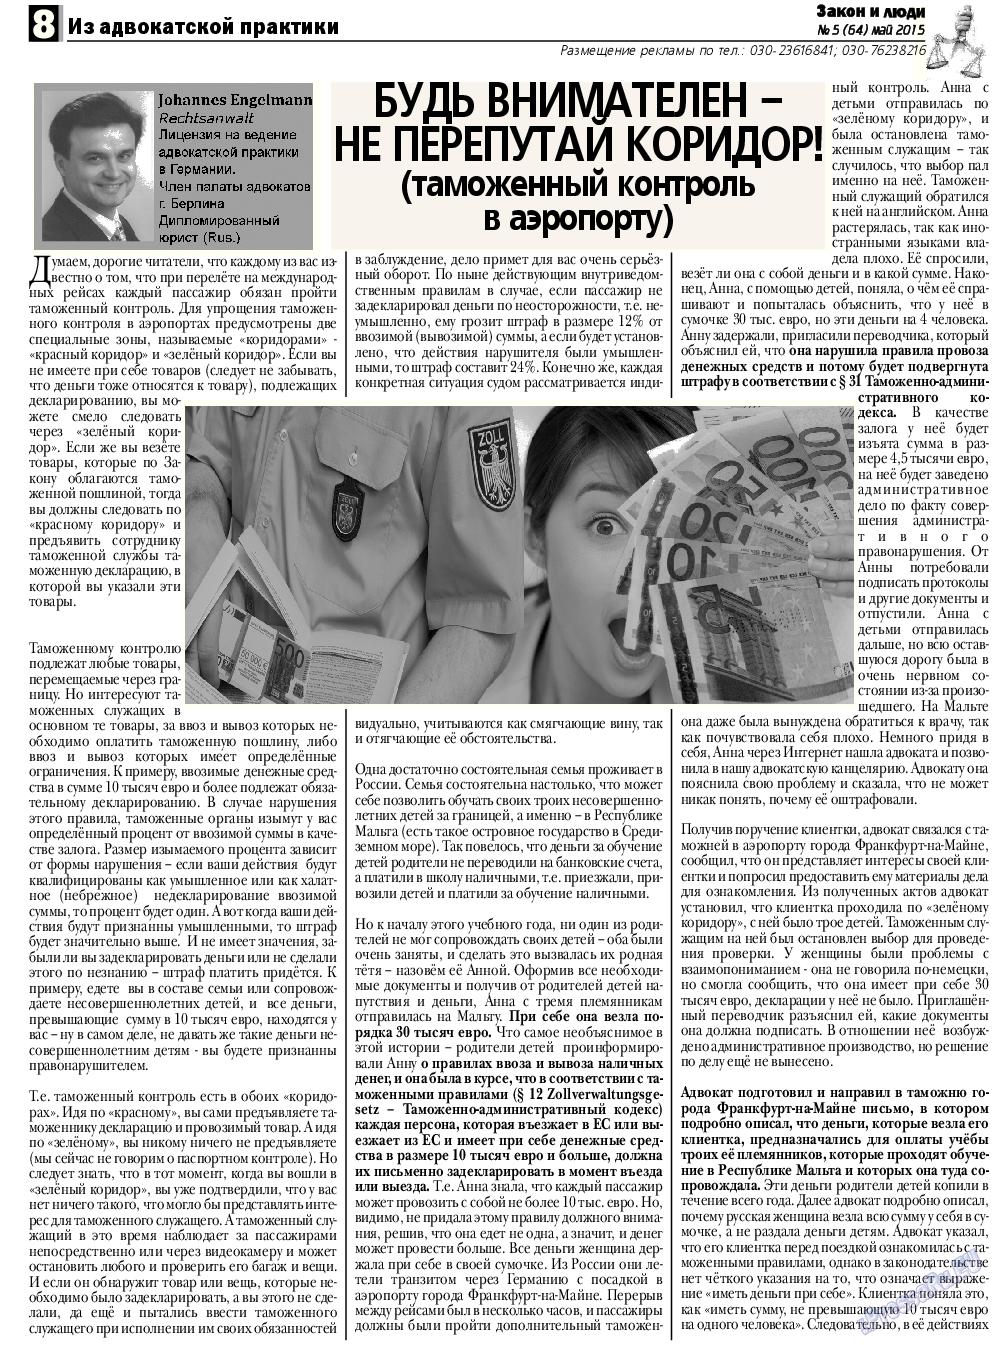 Закон и люди, газета. 2015 №5 стр.8